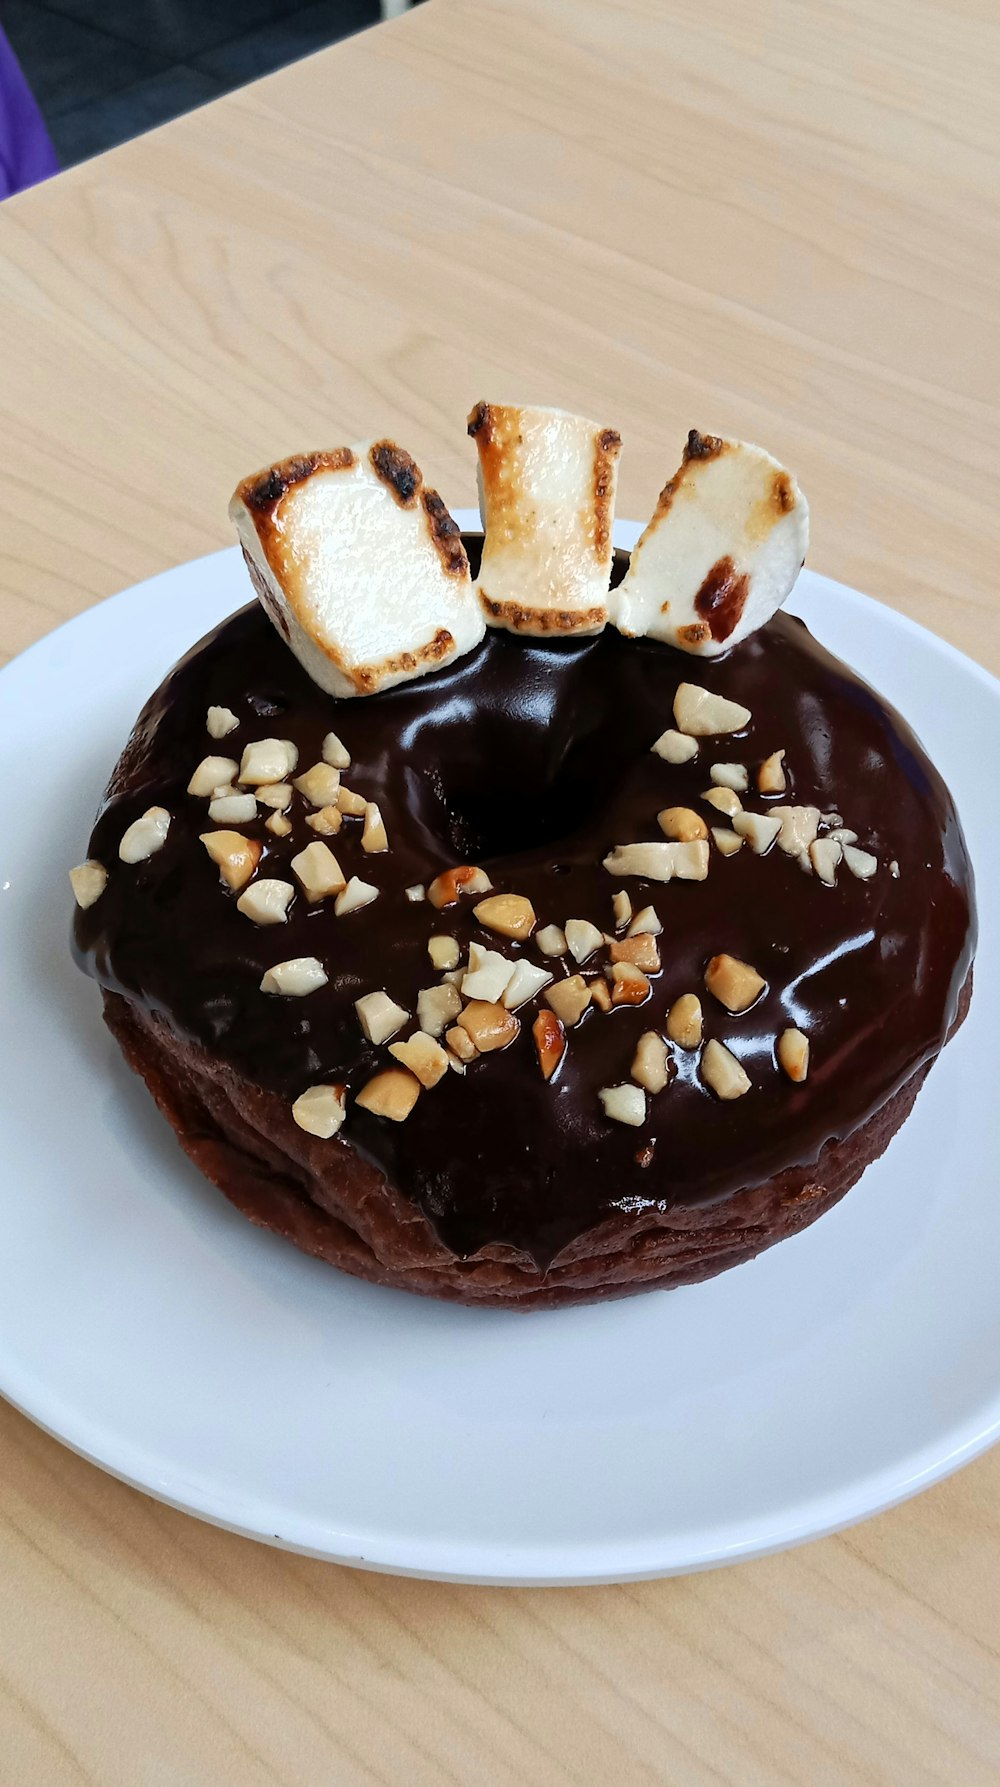 um donut de chocolate com marshmallows por cima